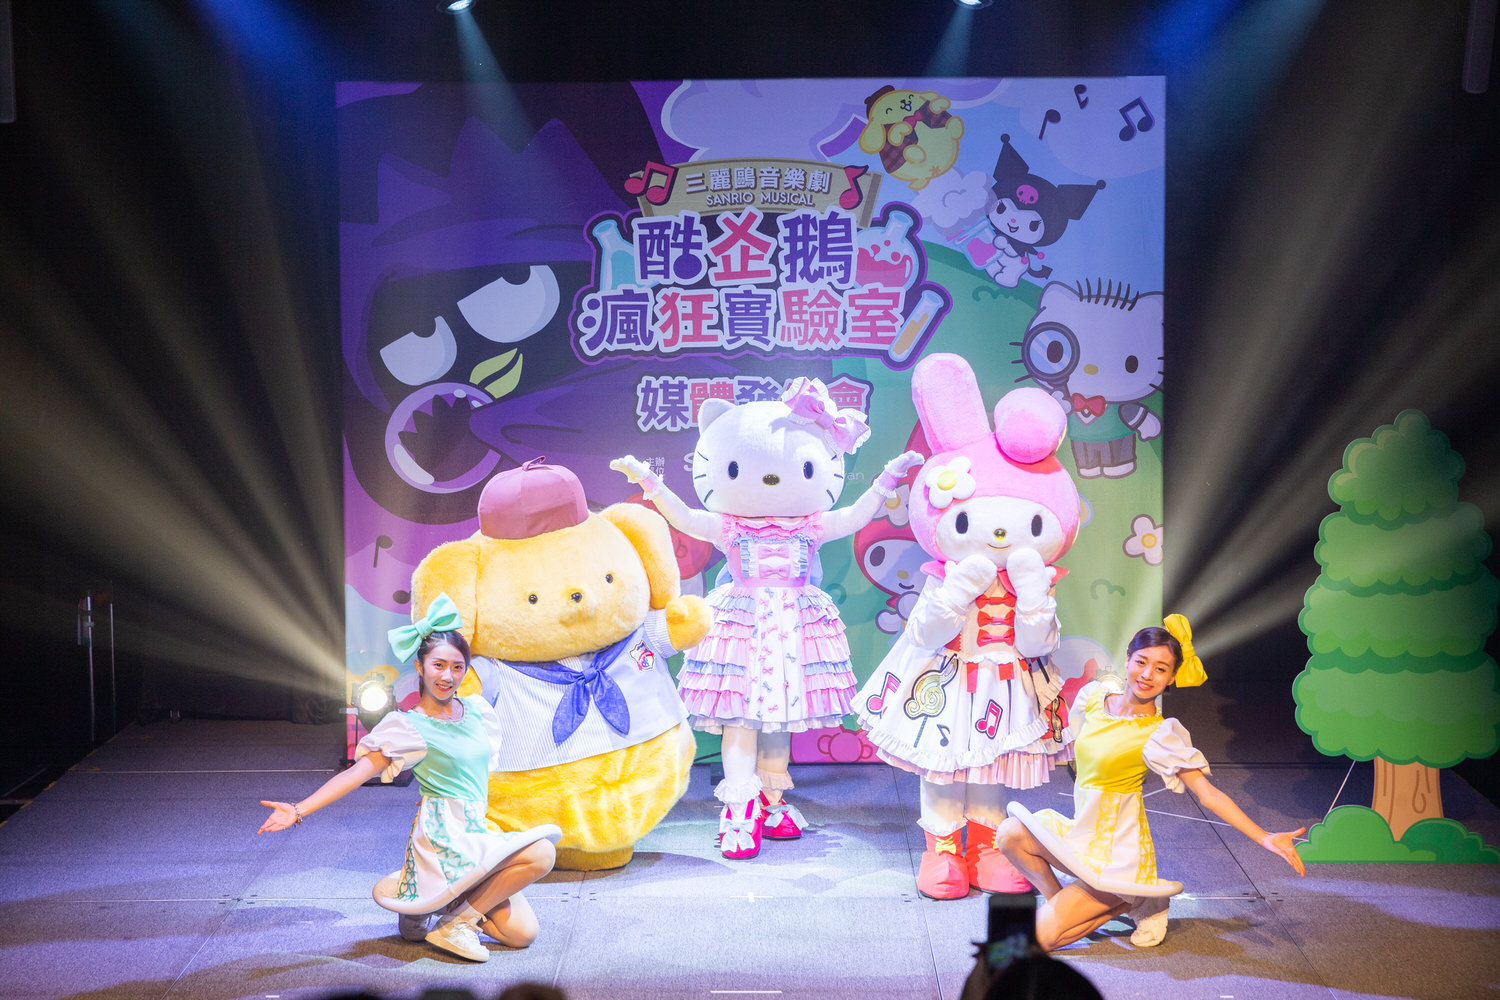 01 三麗鷗音樂劇《酷企鵝瘋狂實驗室》今日11月7日在台北華山烏梅劇場舉辦記者會，由Hello Kitty帶領三麗鷗明星角色們為明年的音樂劇帶來精彩的前導歌舞秀。